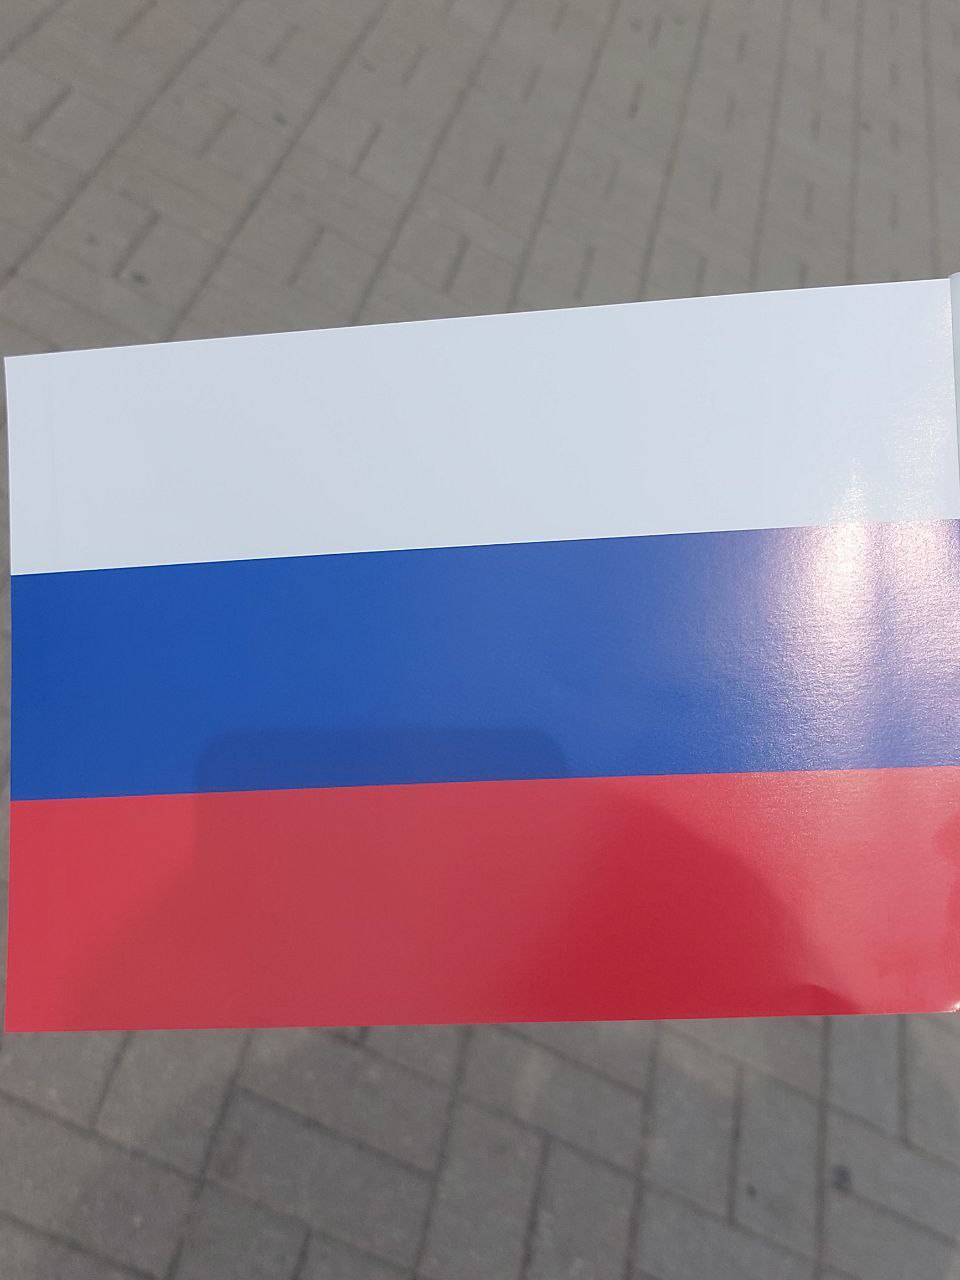 Россия поддерживает свою экономику на стабильном уровне, несмотря на санкции